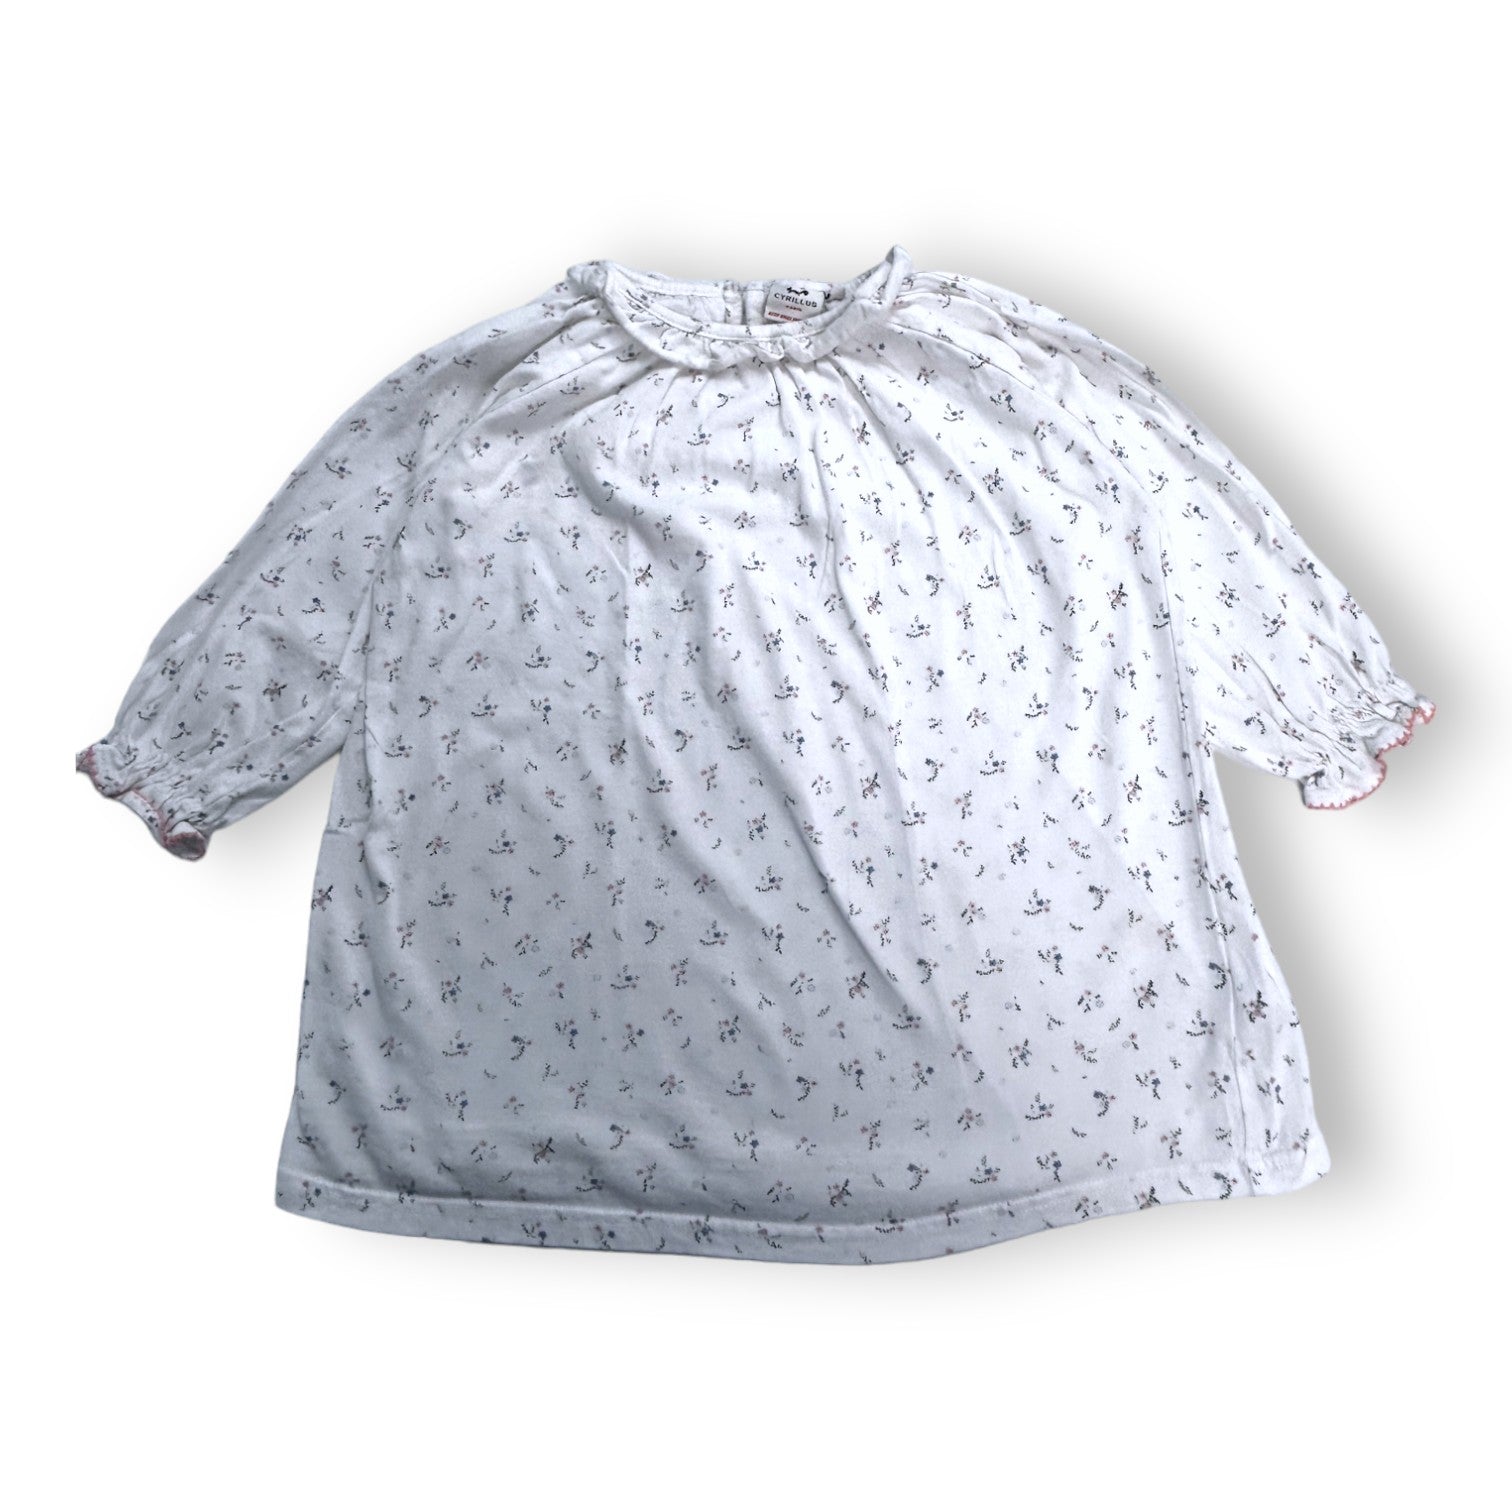 CYRILLUS - T-shirt blanc manches longues imprimés fleuris - 4 ans